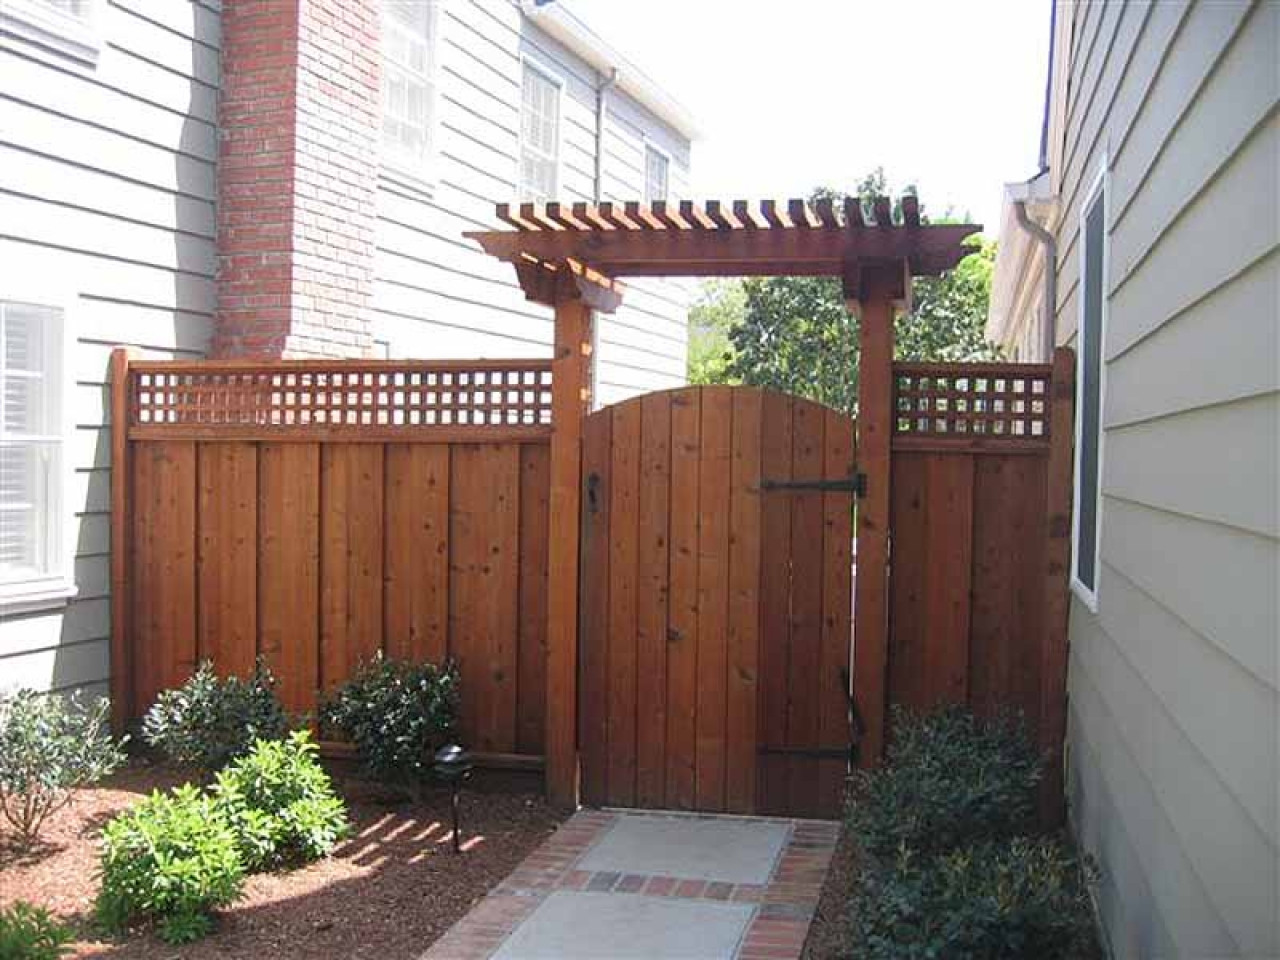 Backyard Fence Door
 Pergola and lattice fence garden door gate with arch